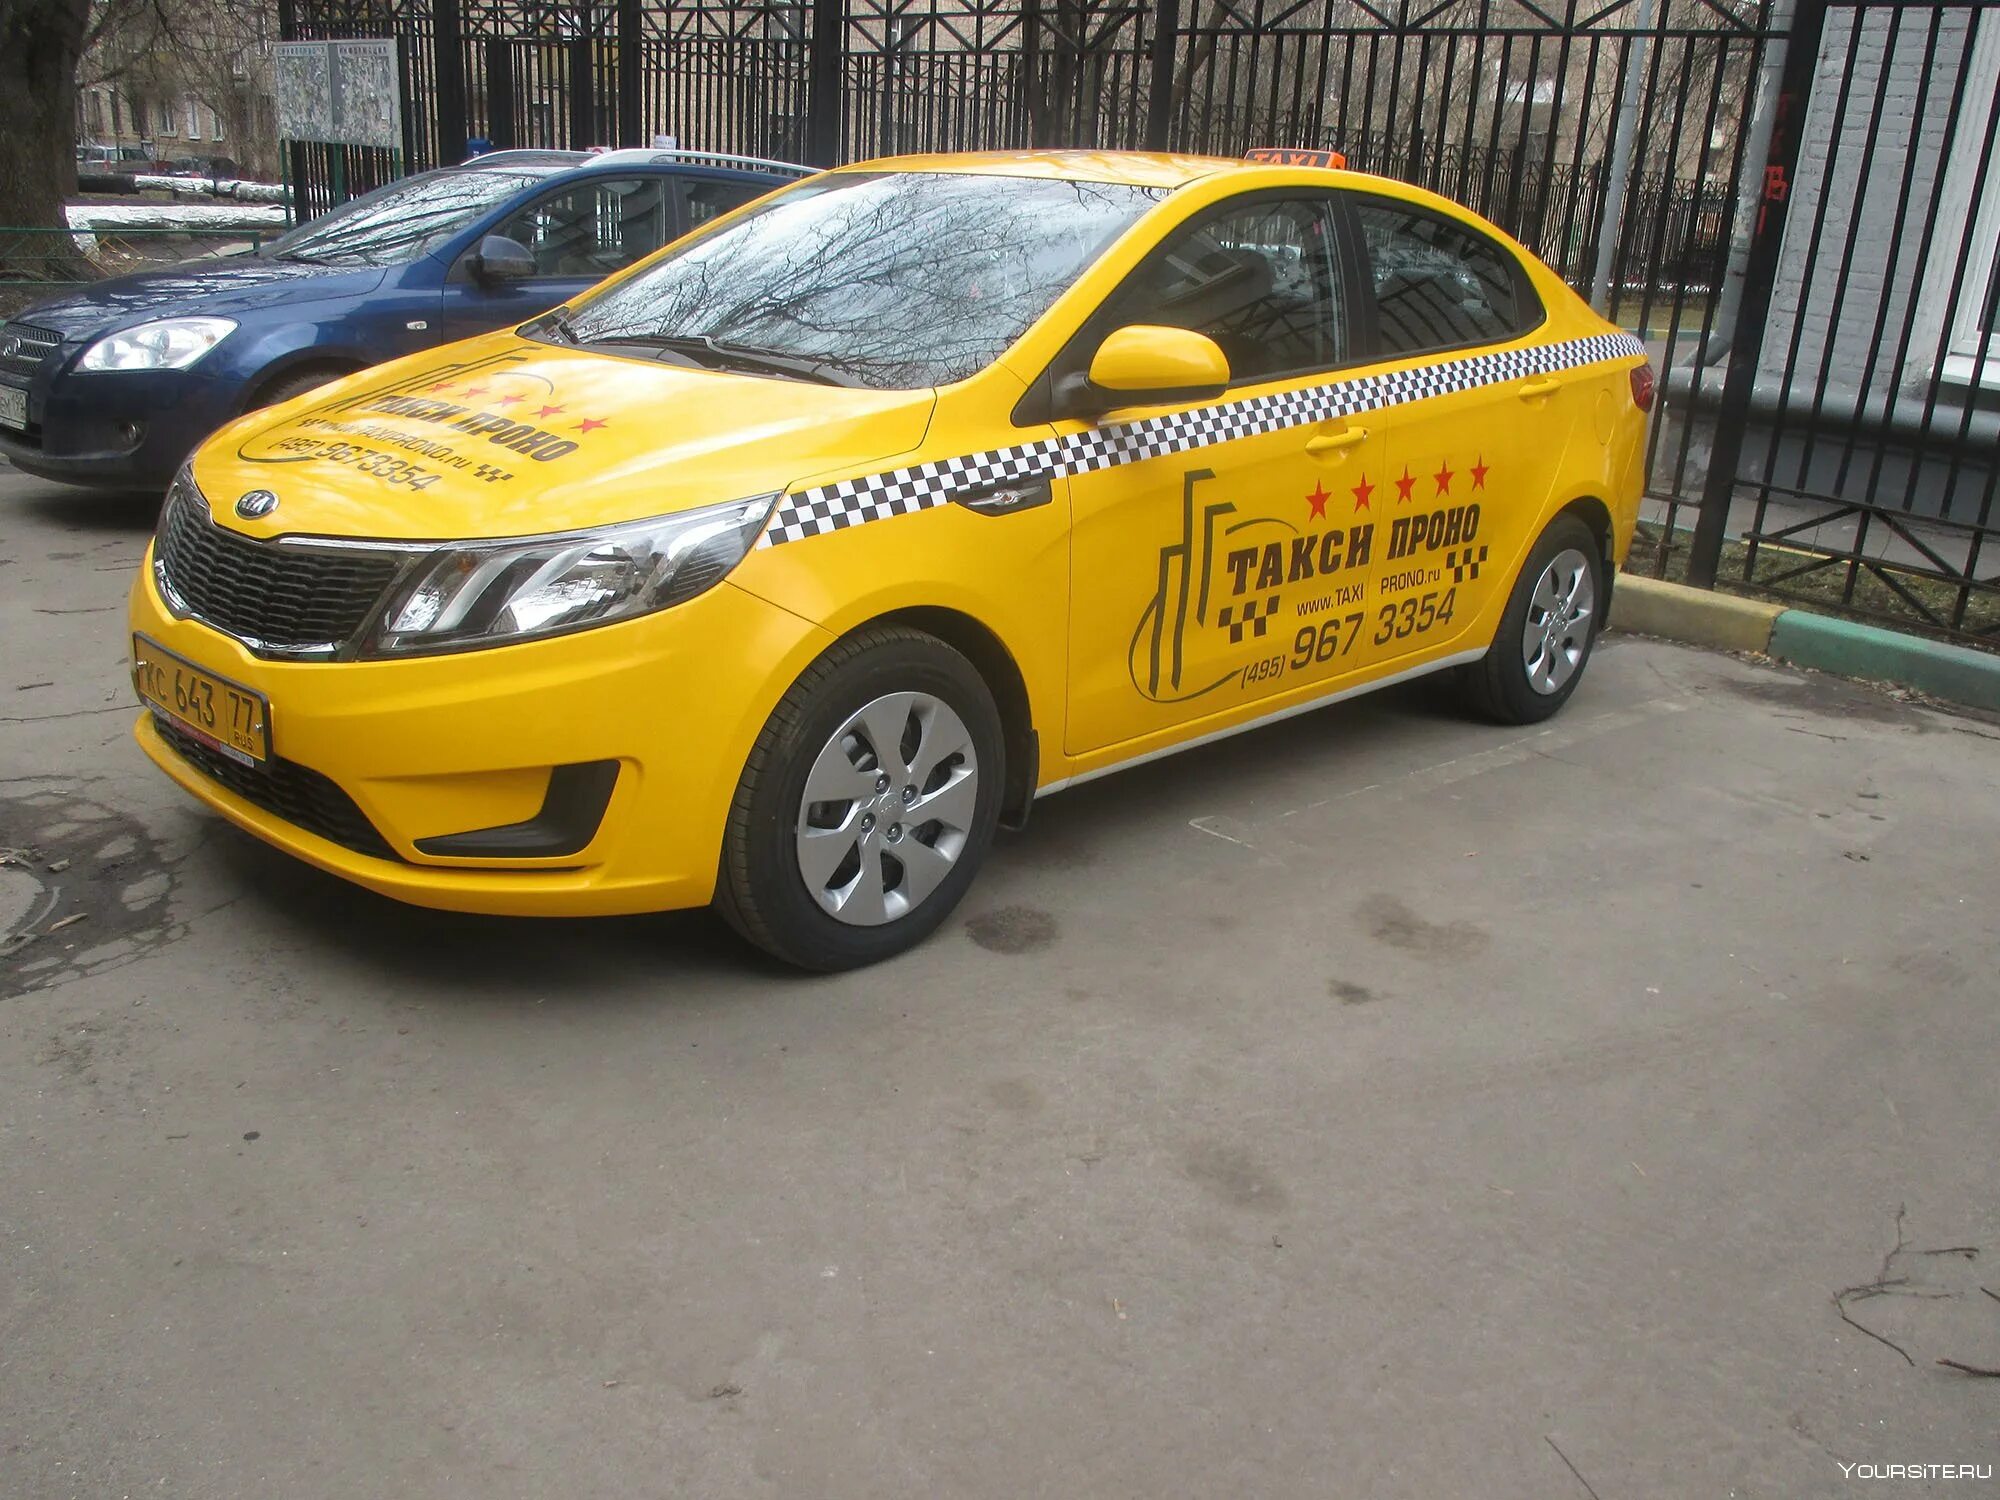 Таксопарк новые. Машина под такси. Машина "такси". Автопарк такси. Недорогие машины для такси.